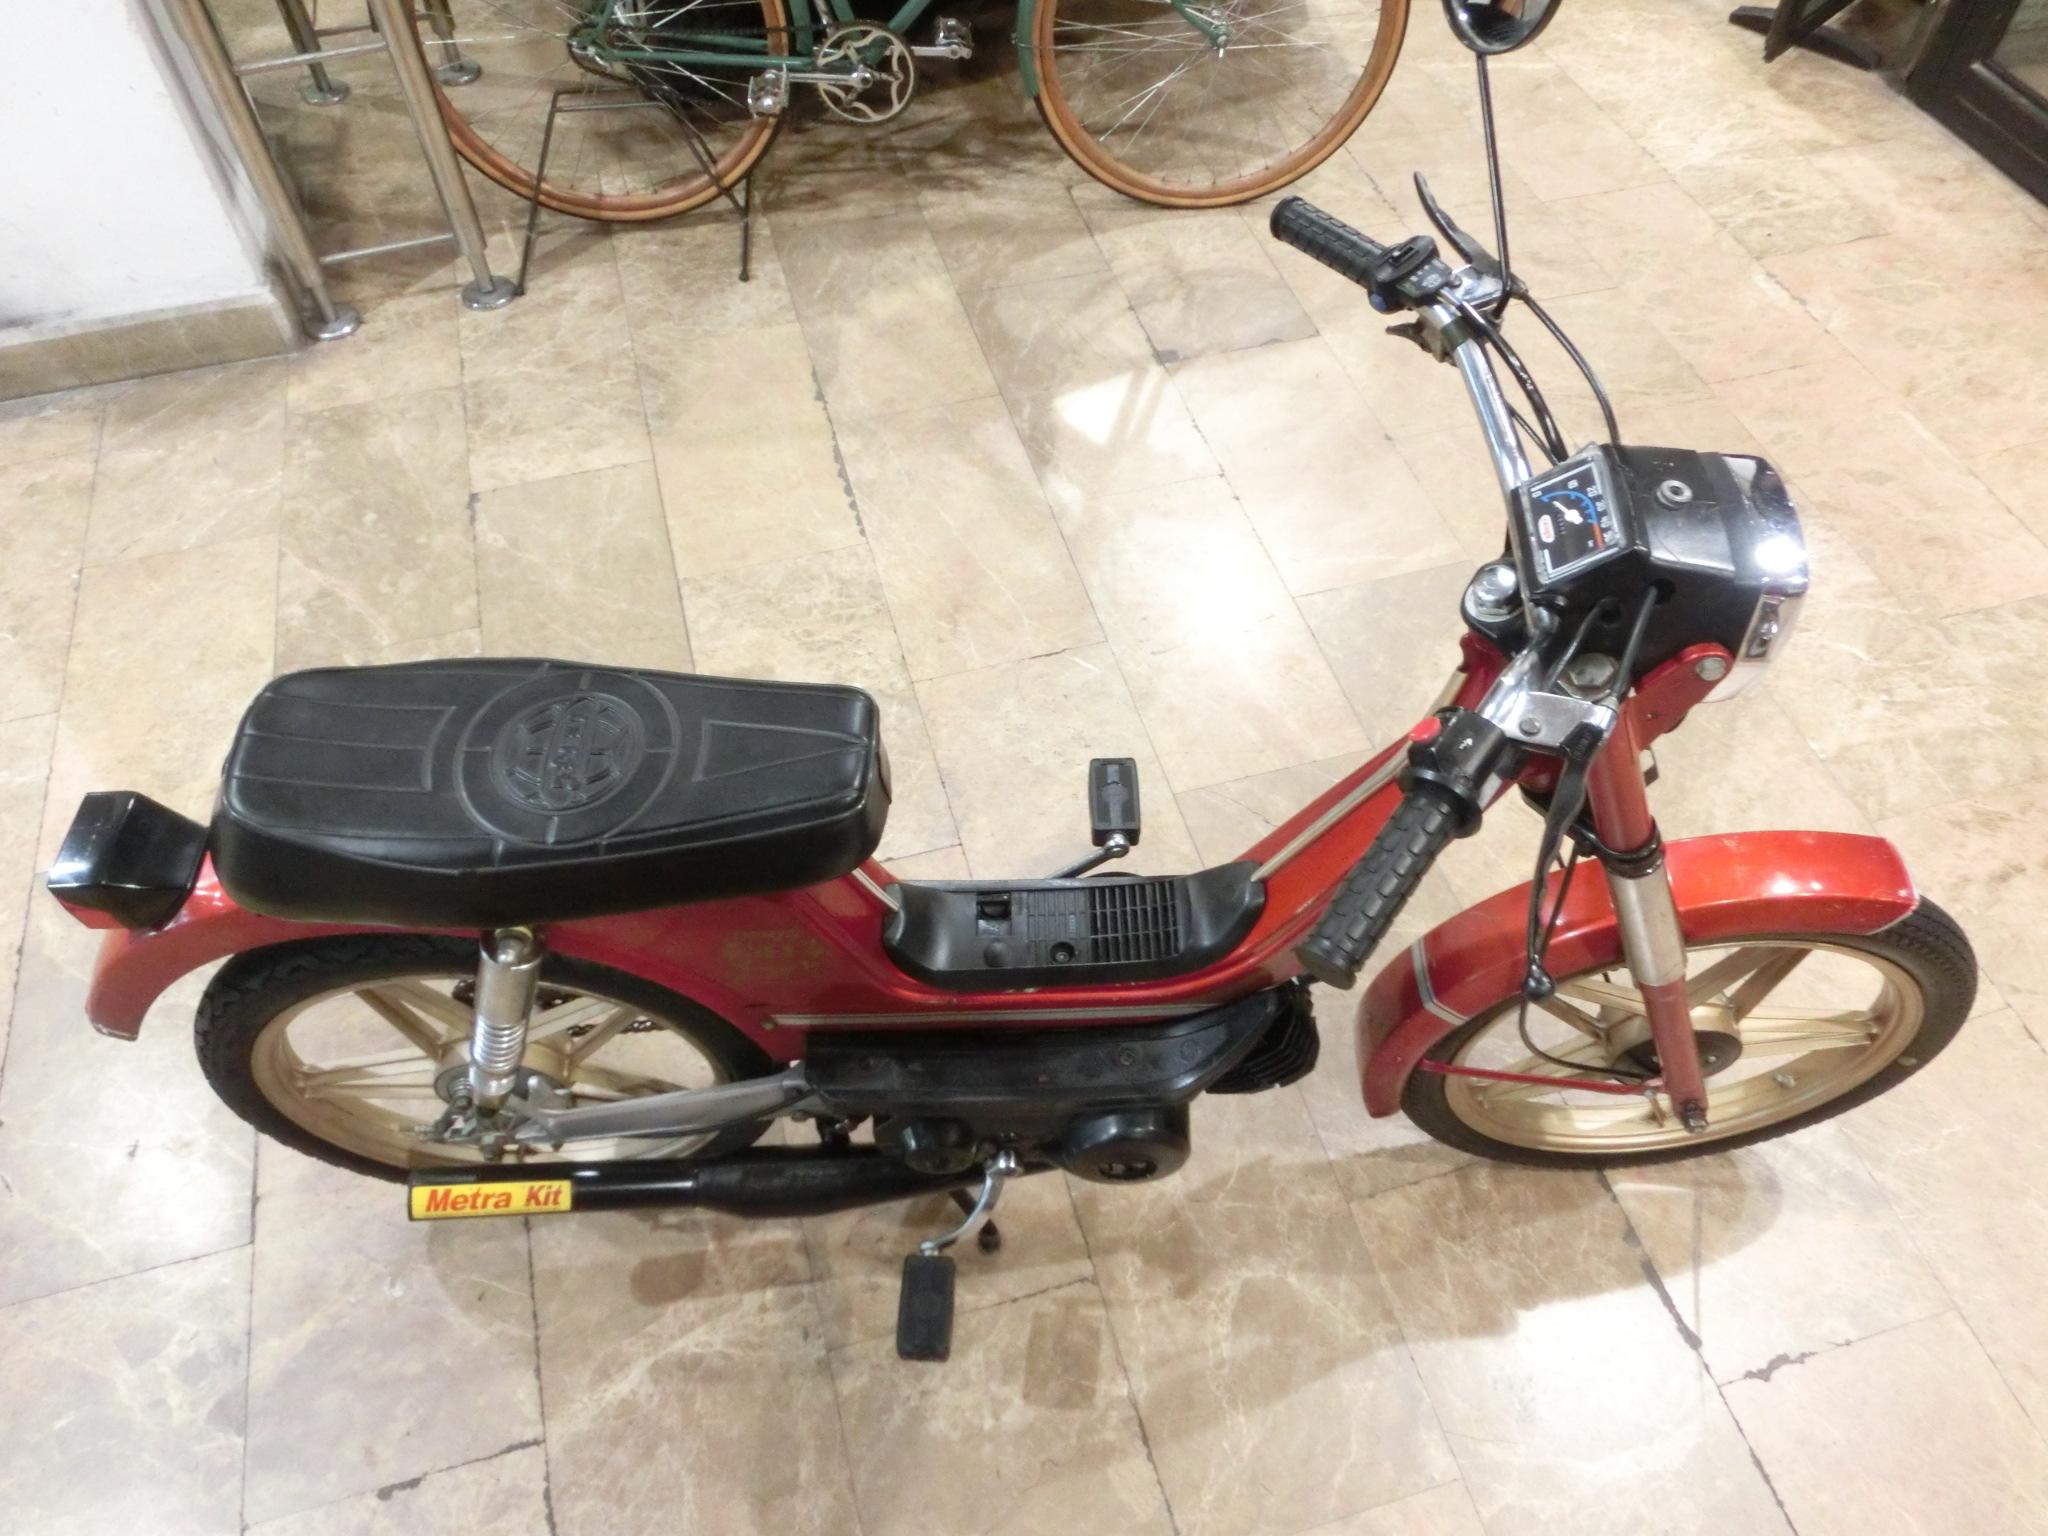 Ciclomotor de la marca Derbi, modelo Variant